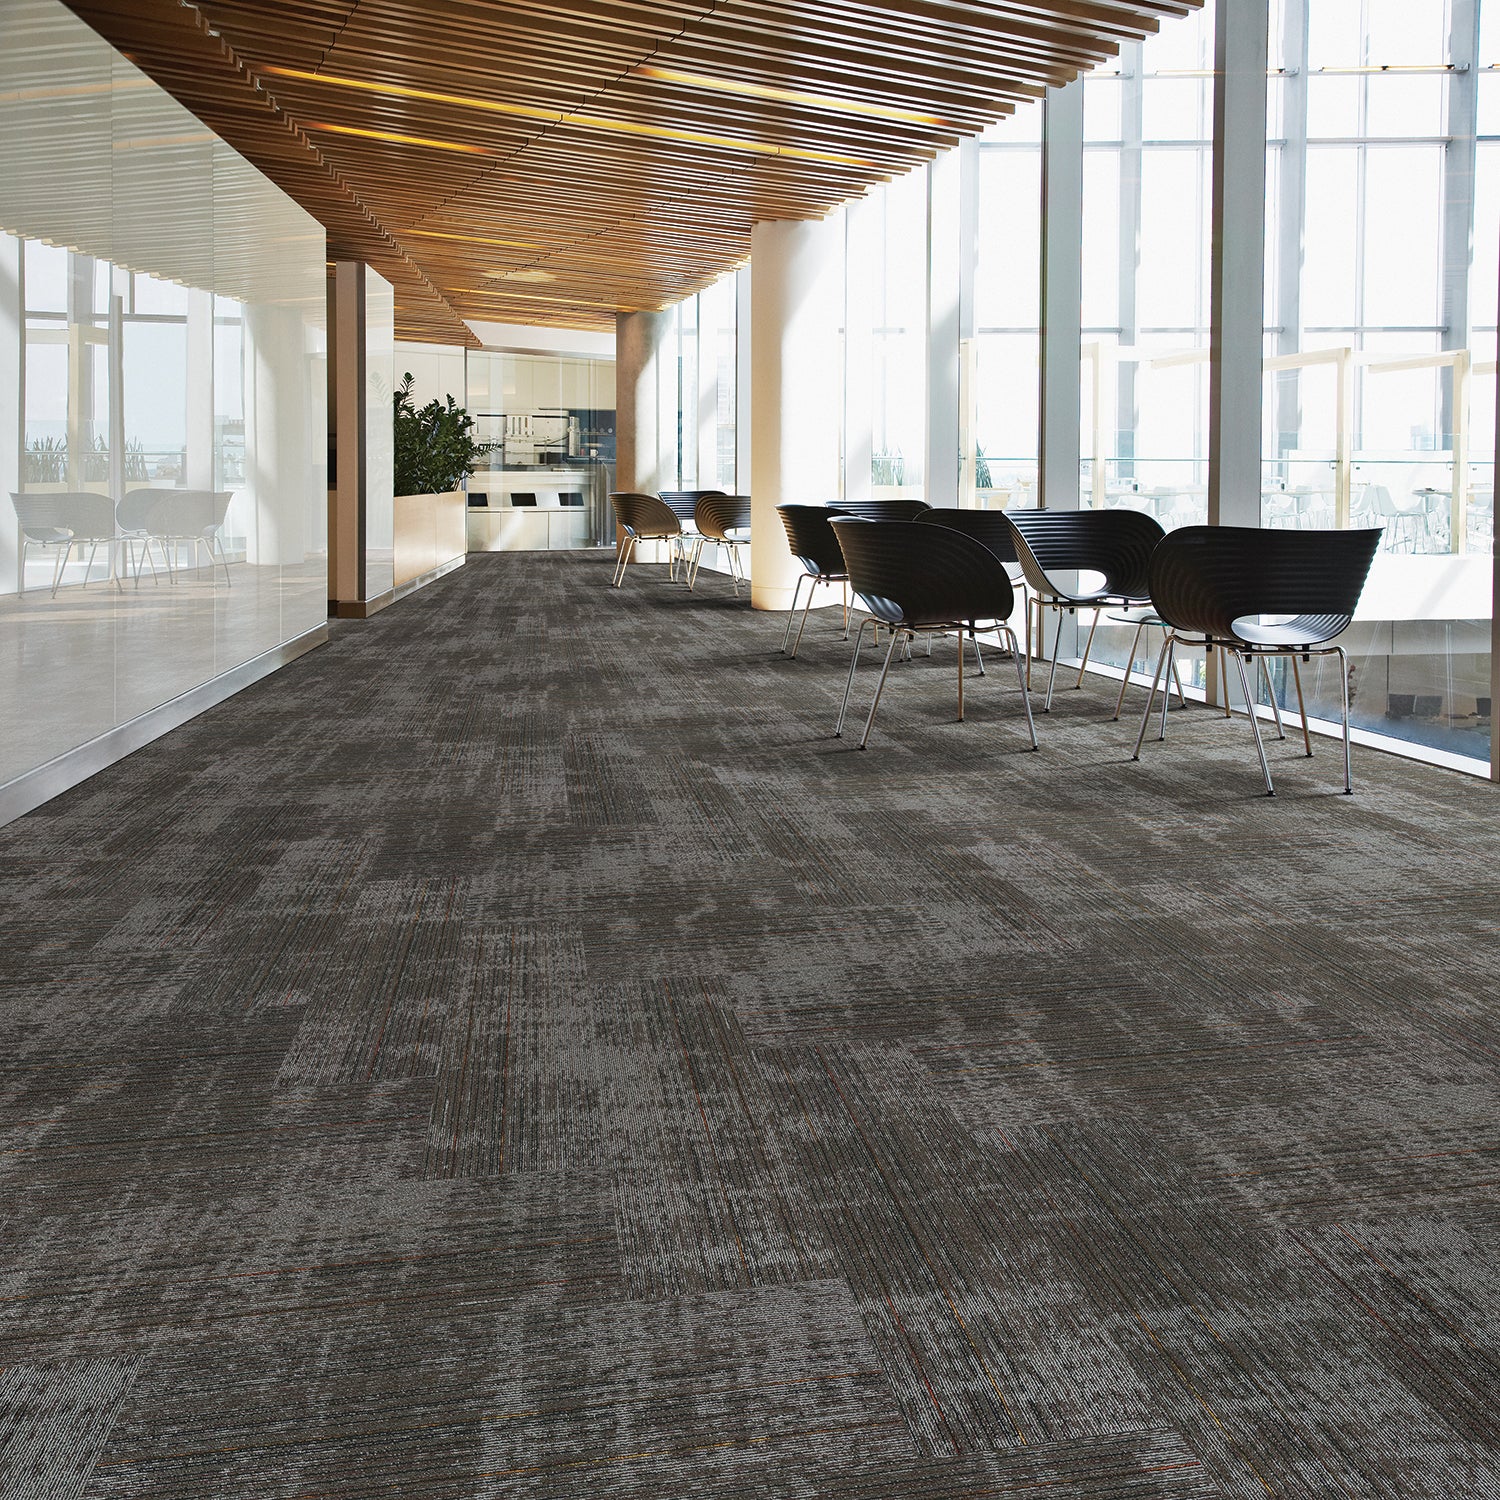 Kraus Impulse Commercial Carpet Tile Newbury Port Floorzz